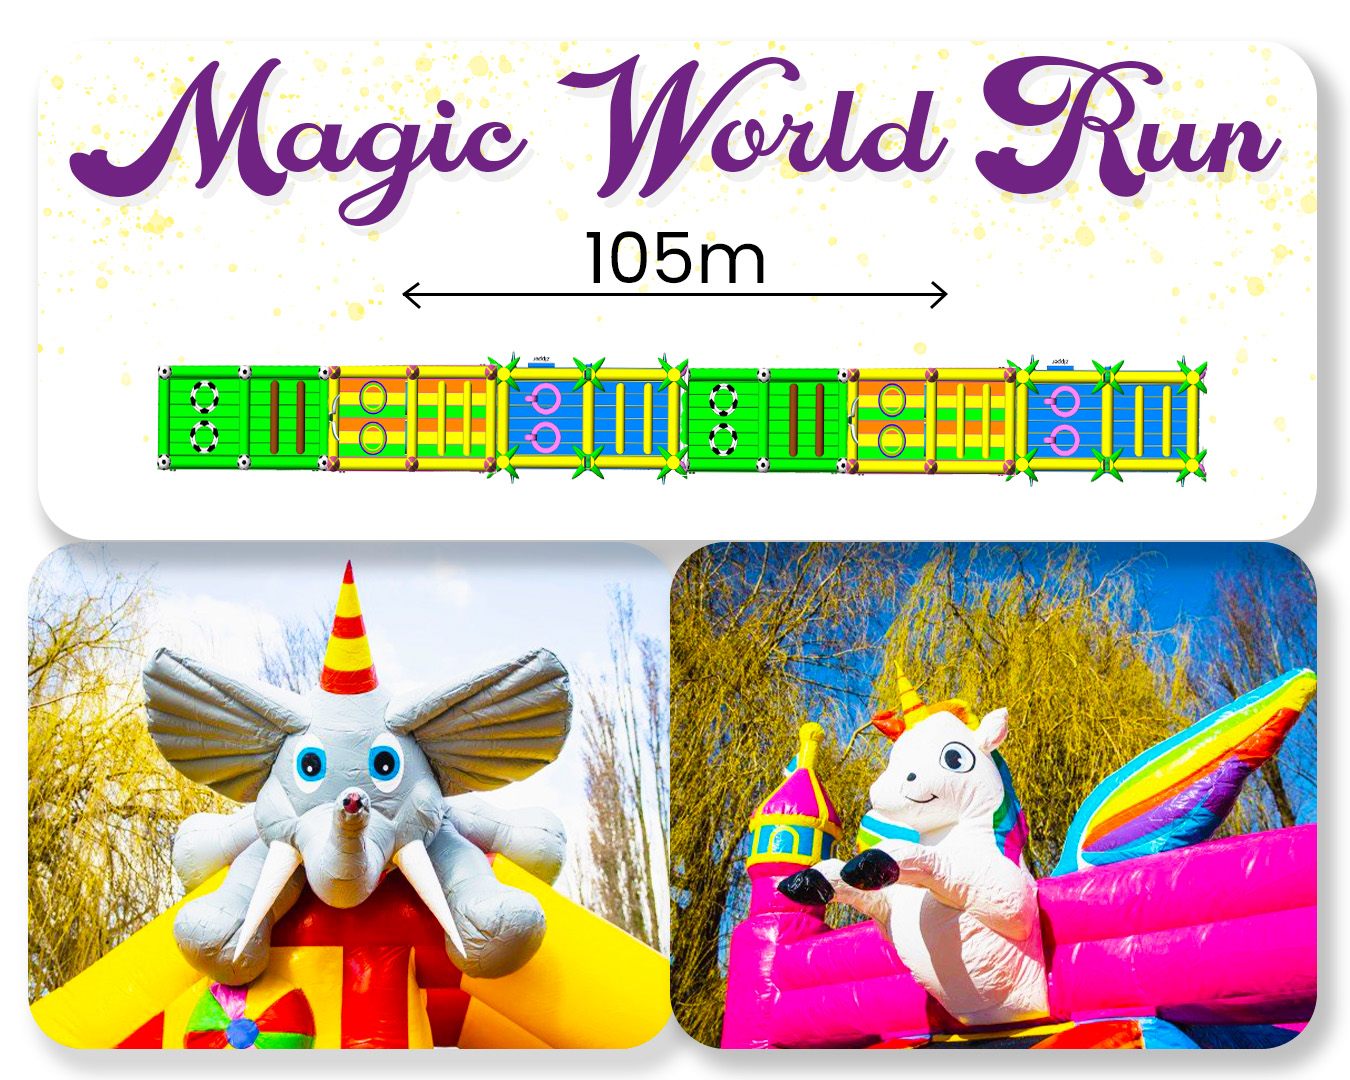 Magic World Run 105m